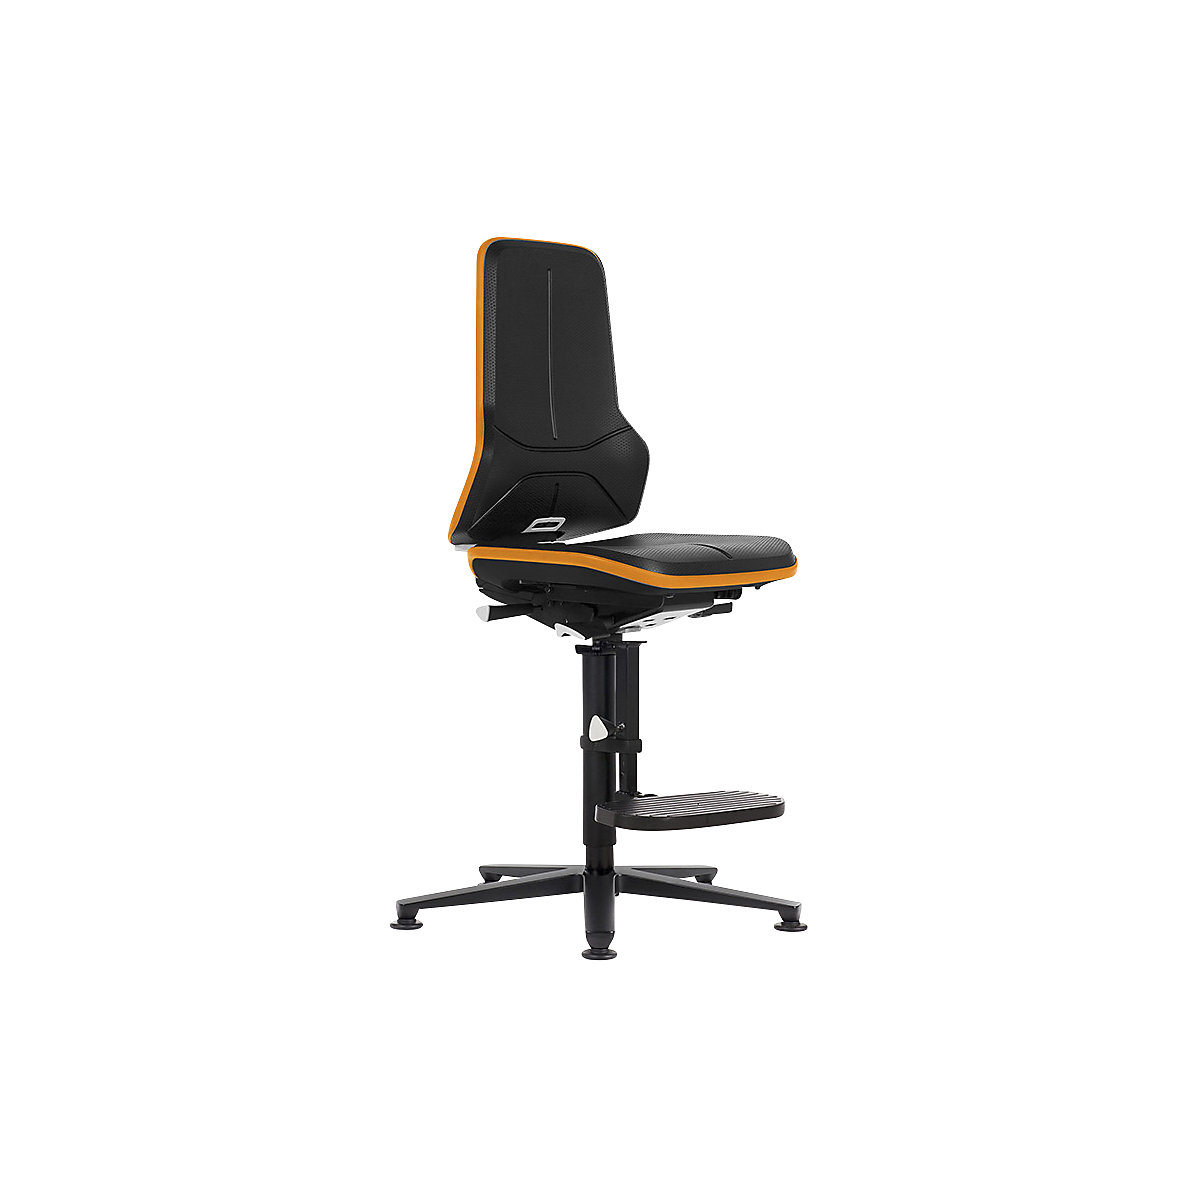 Průmyslová otočná židle NEON ESD, patky, stupínek pro nohy - bimos